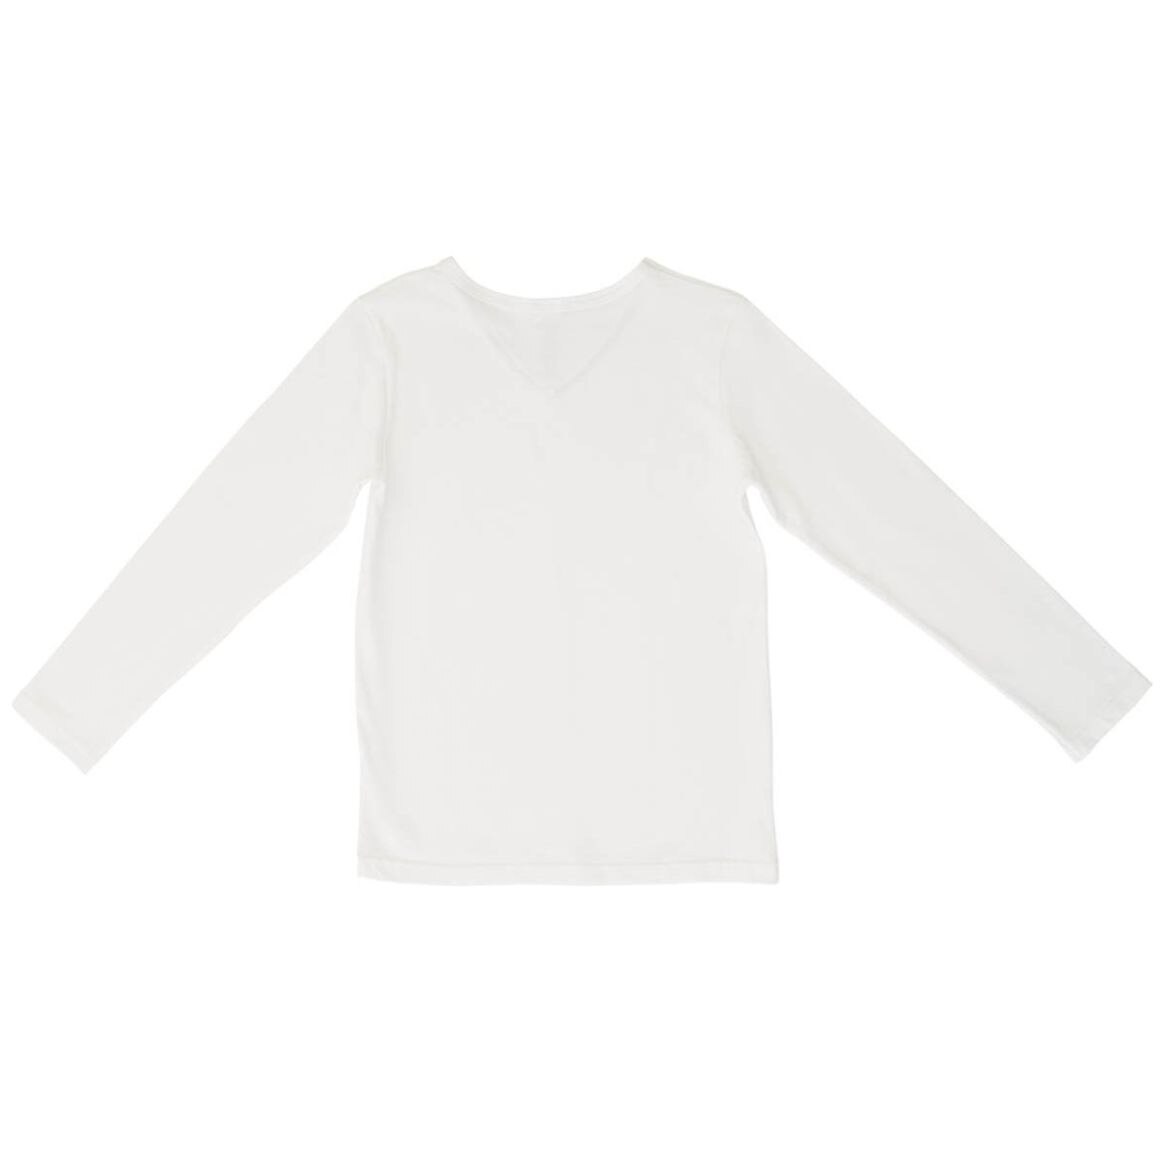 Camiseta Blanca Manda Larga para Niño Oscar Hackman Modelo Ohoic4